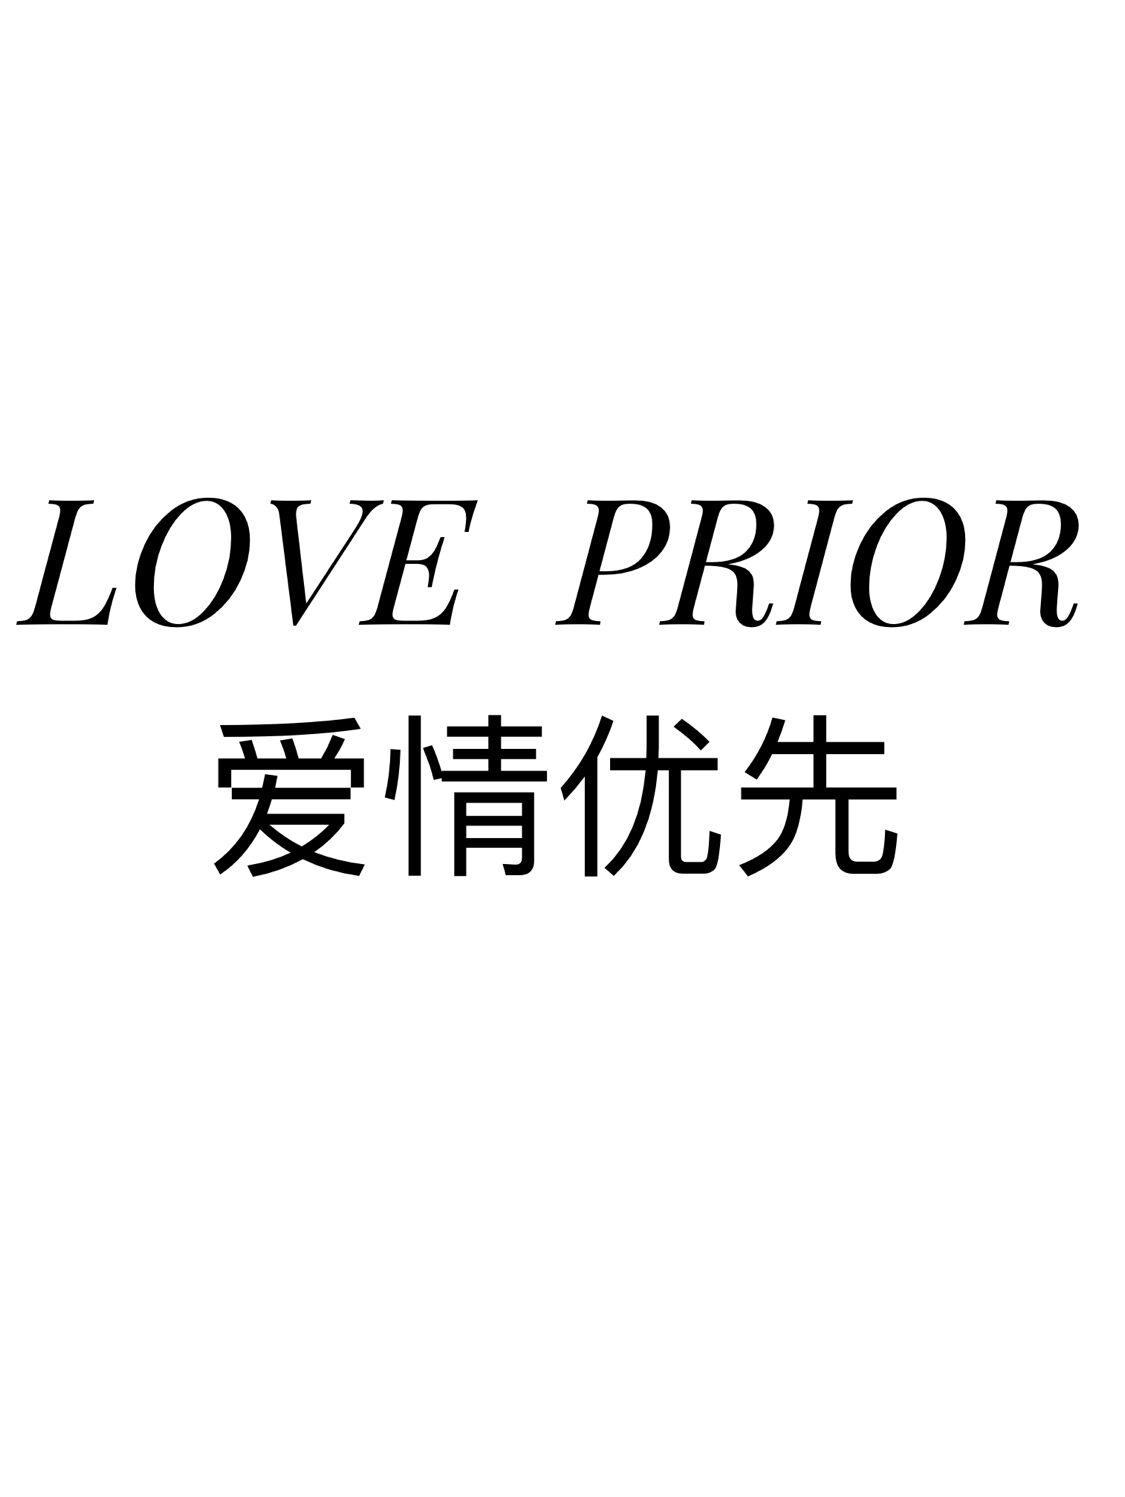 爱情优先 LOVE  PRIOR